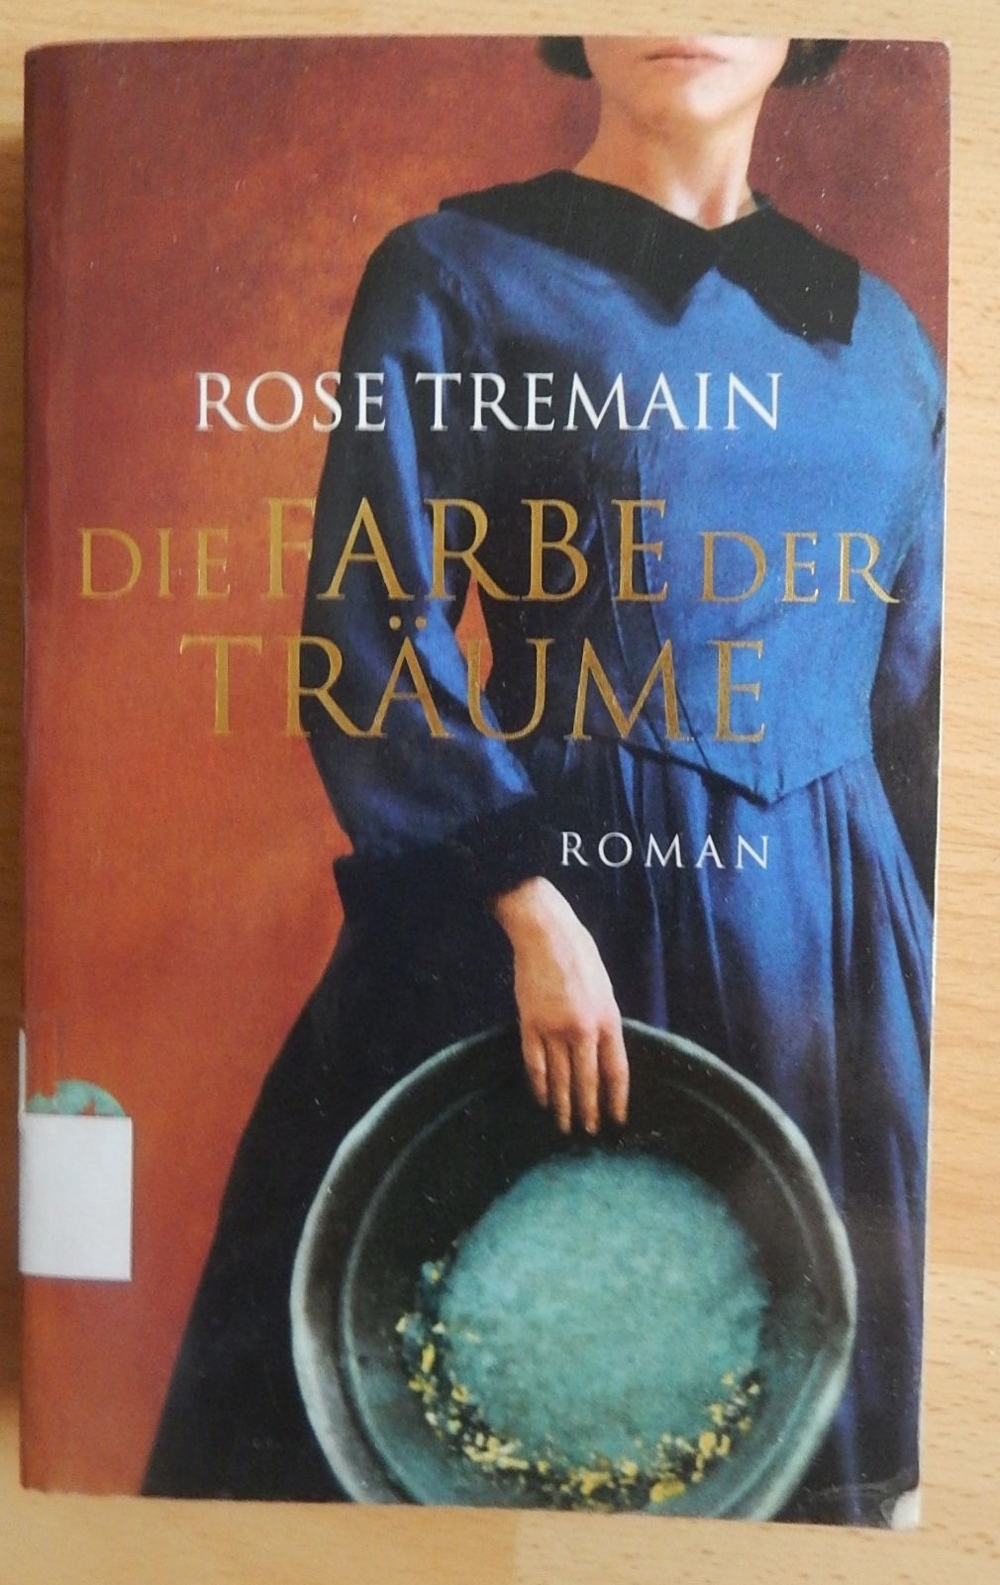 Die Farbe der Träume / Rose Tremain / ISBN 978-3-458-35702-5